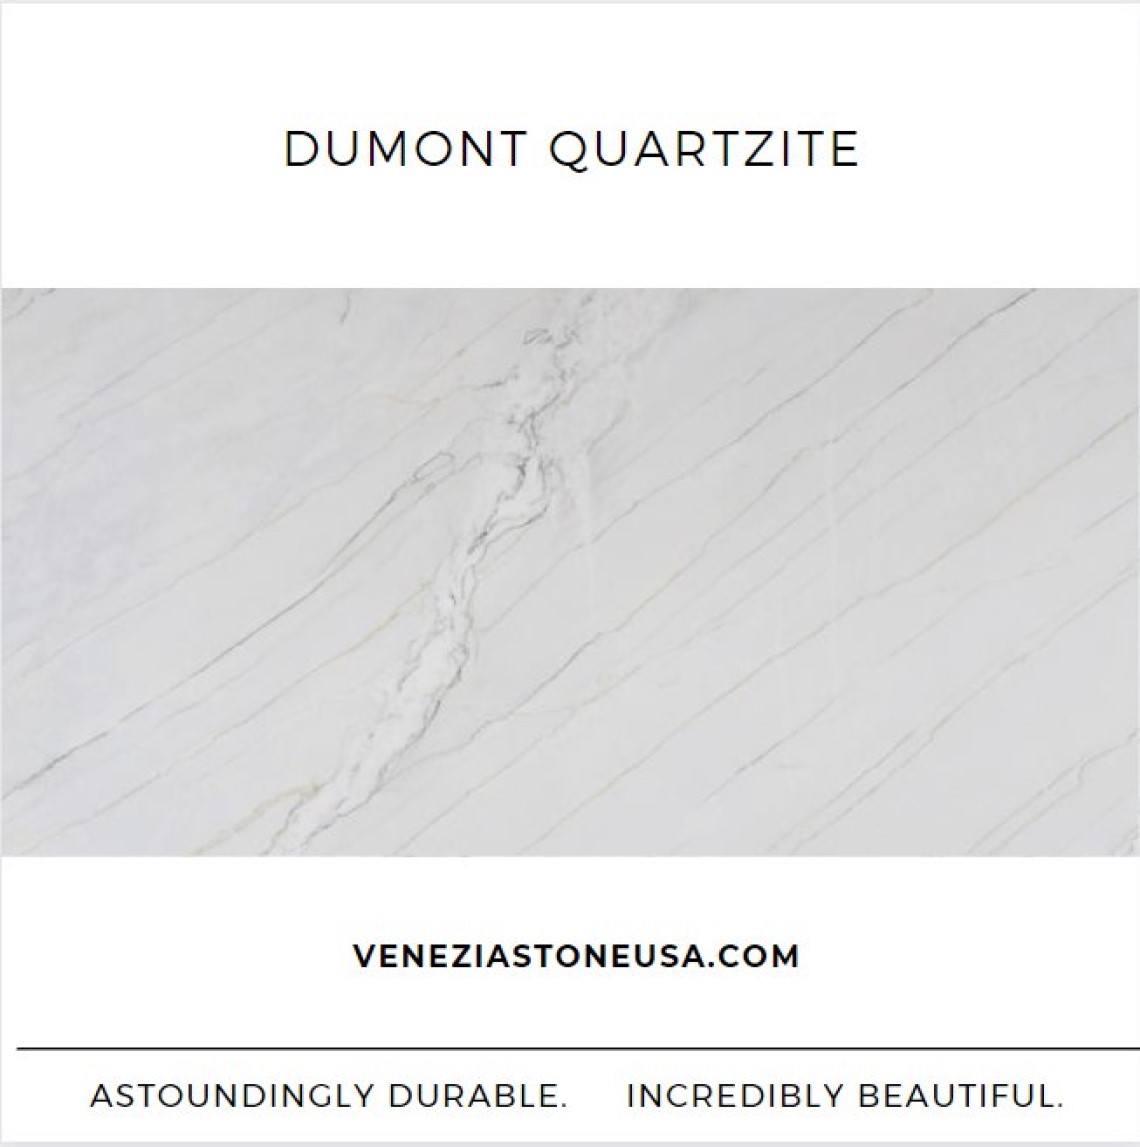 Dumont Quartzite